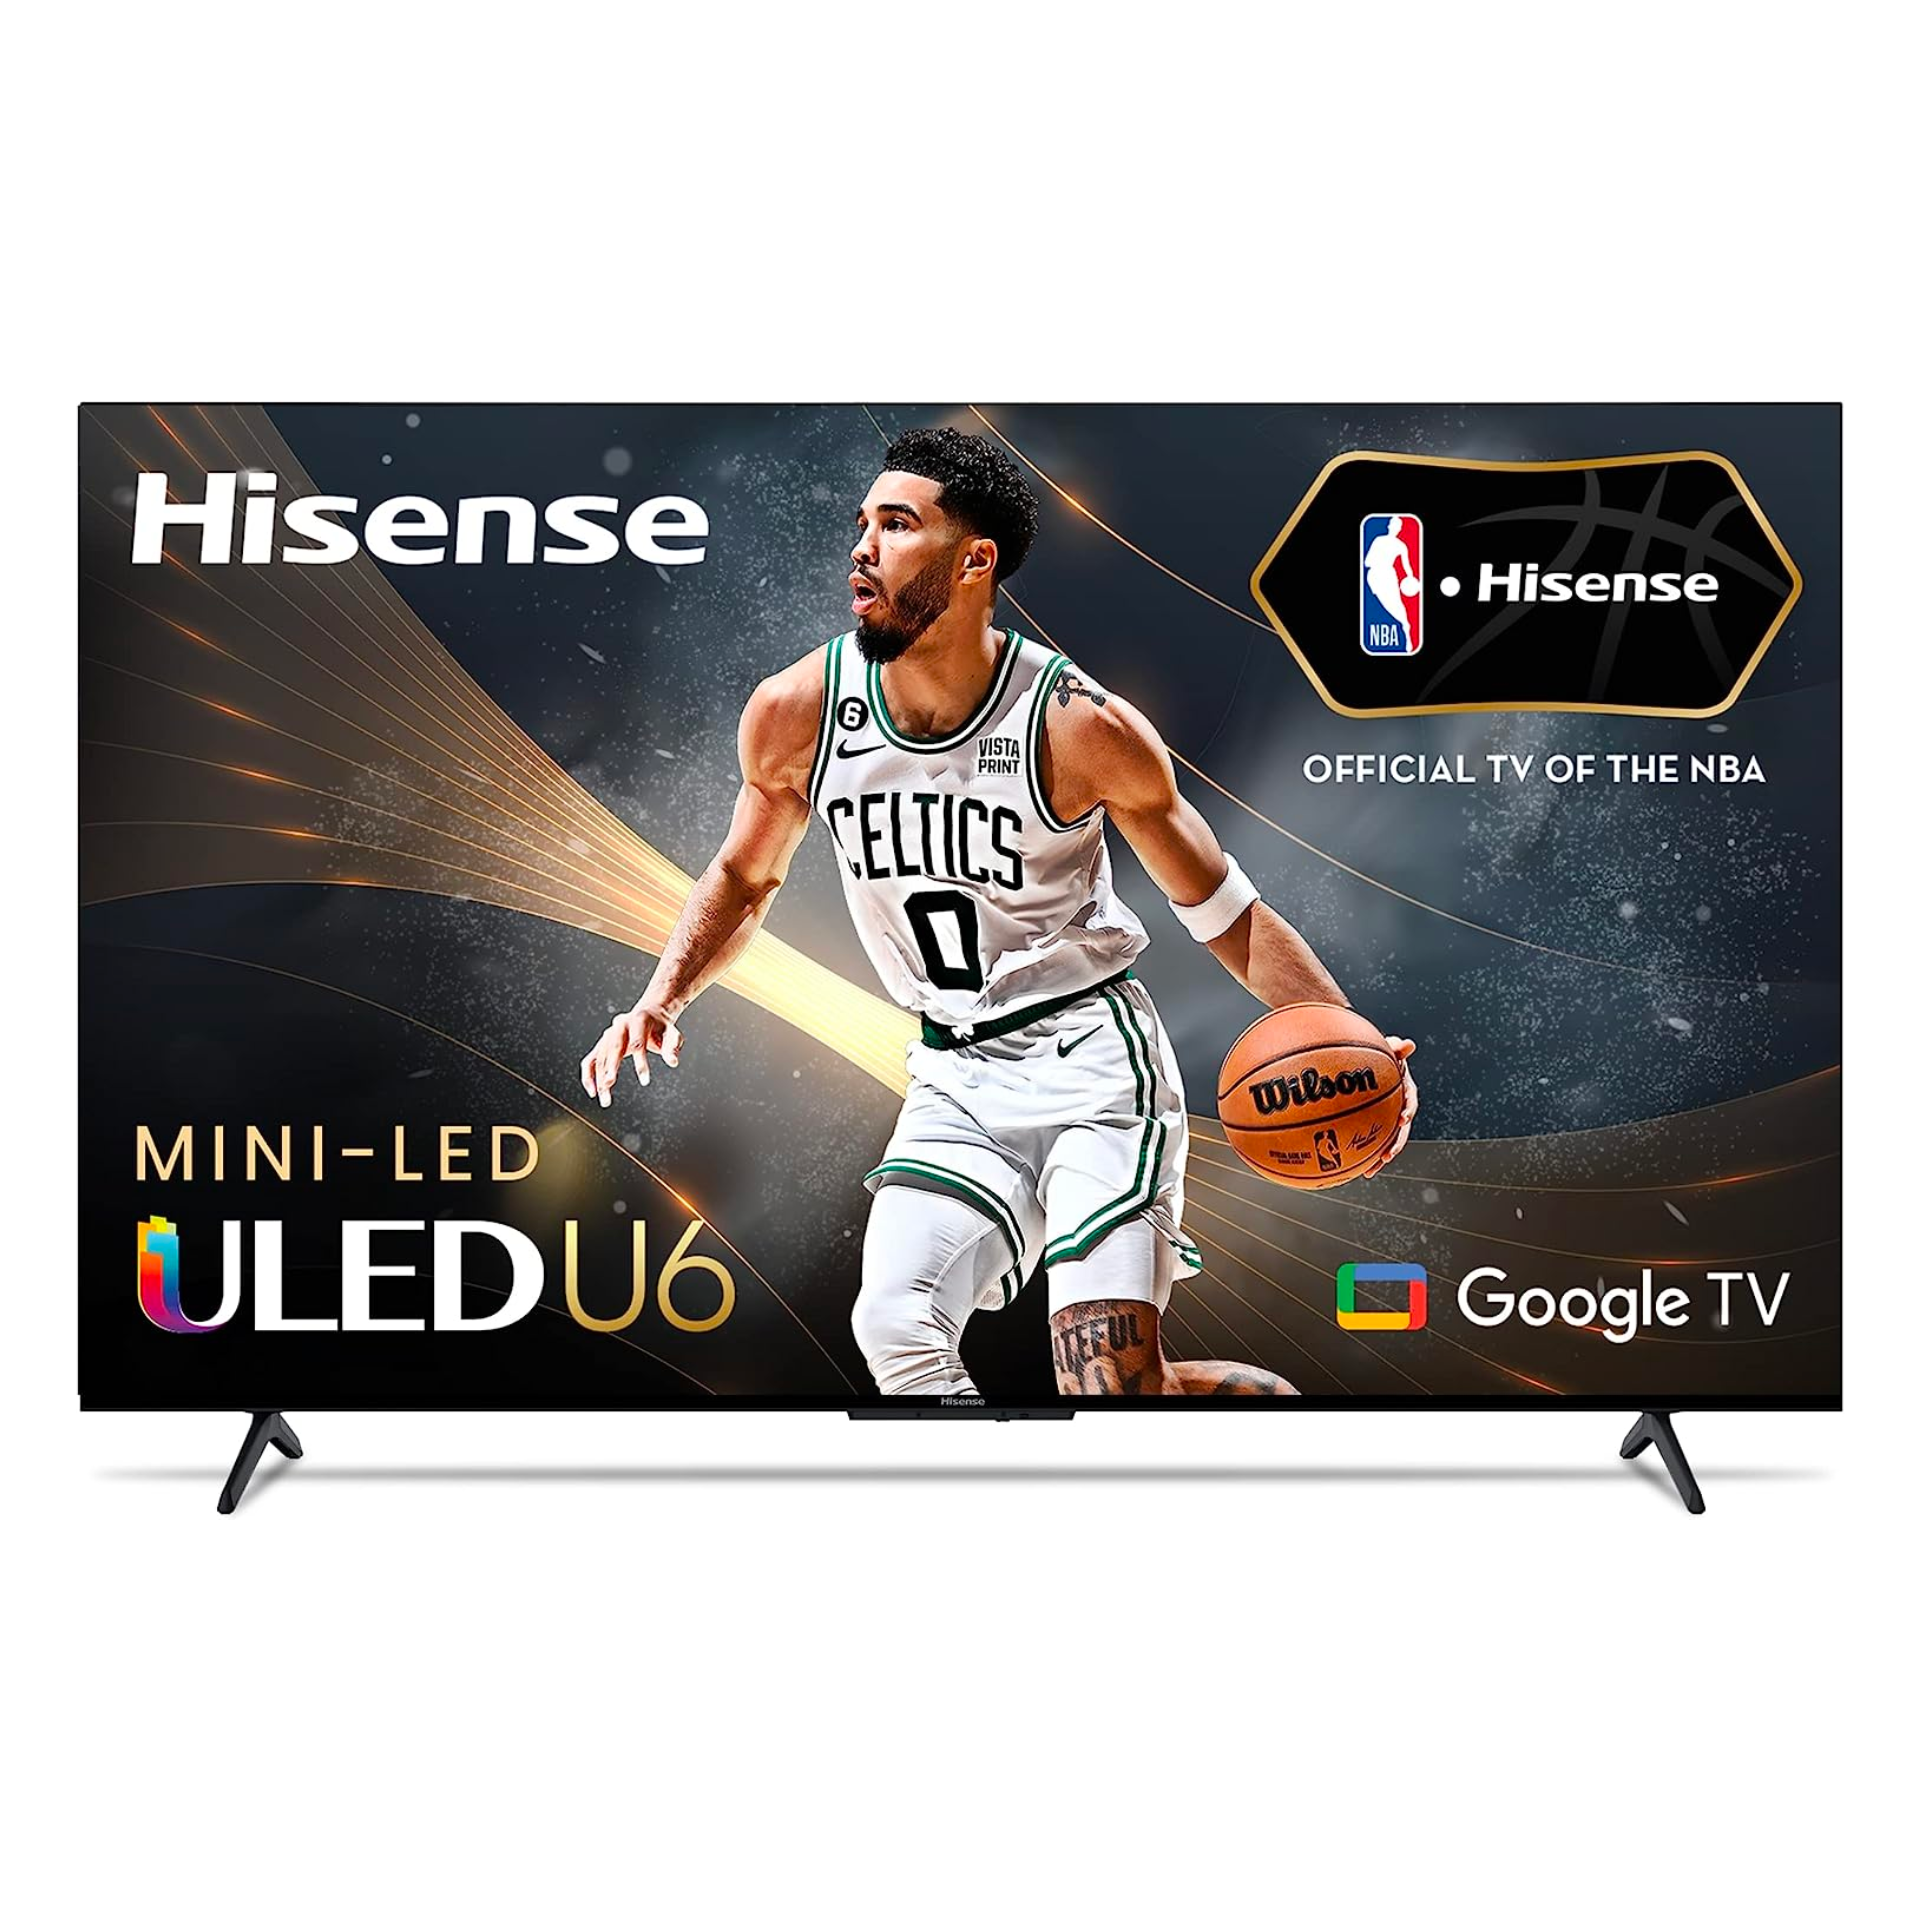 Hisense drops the price of mini-LED TVs under $500 at CES 2023